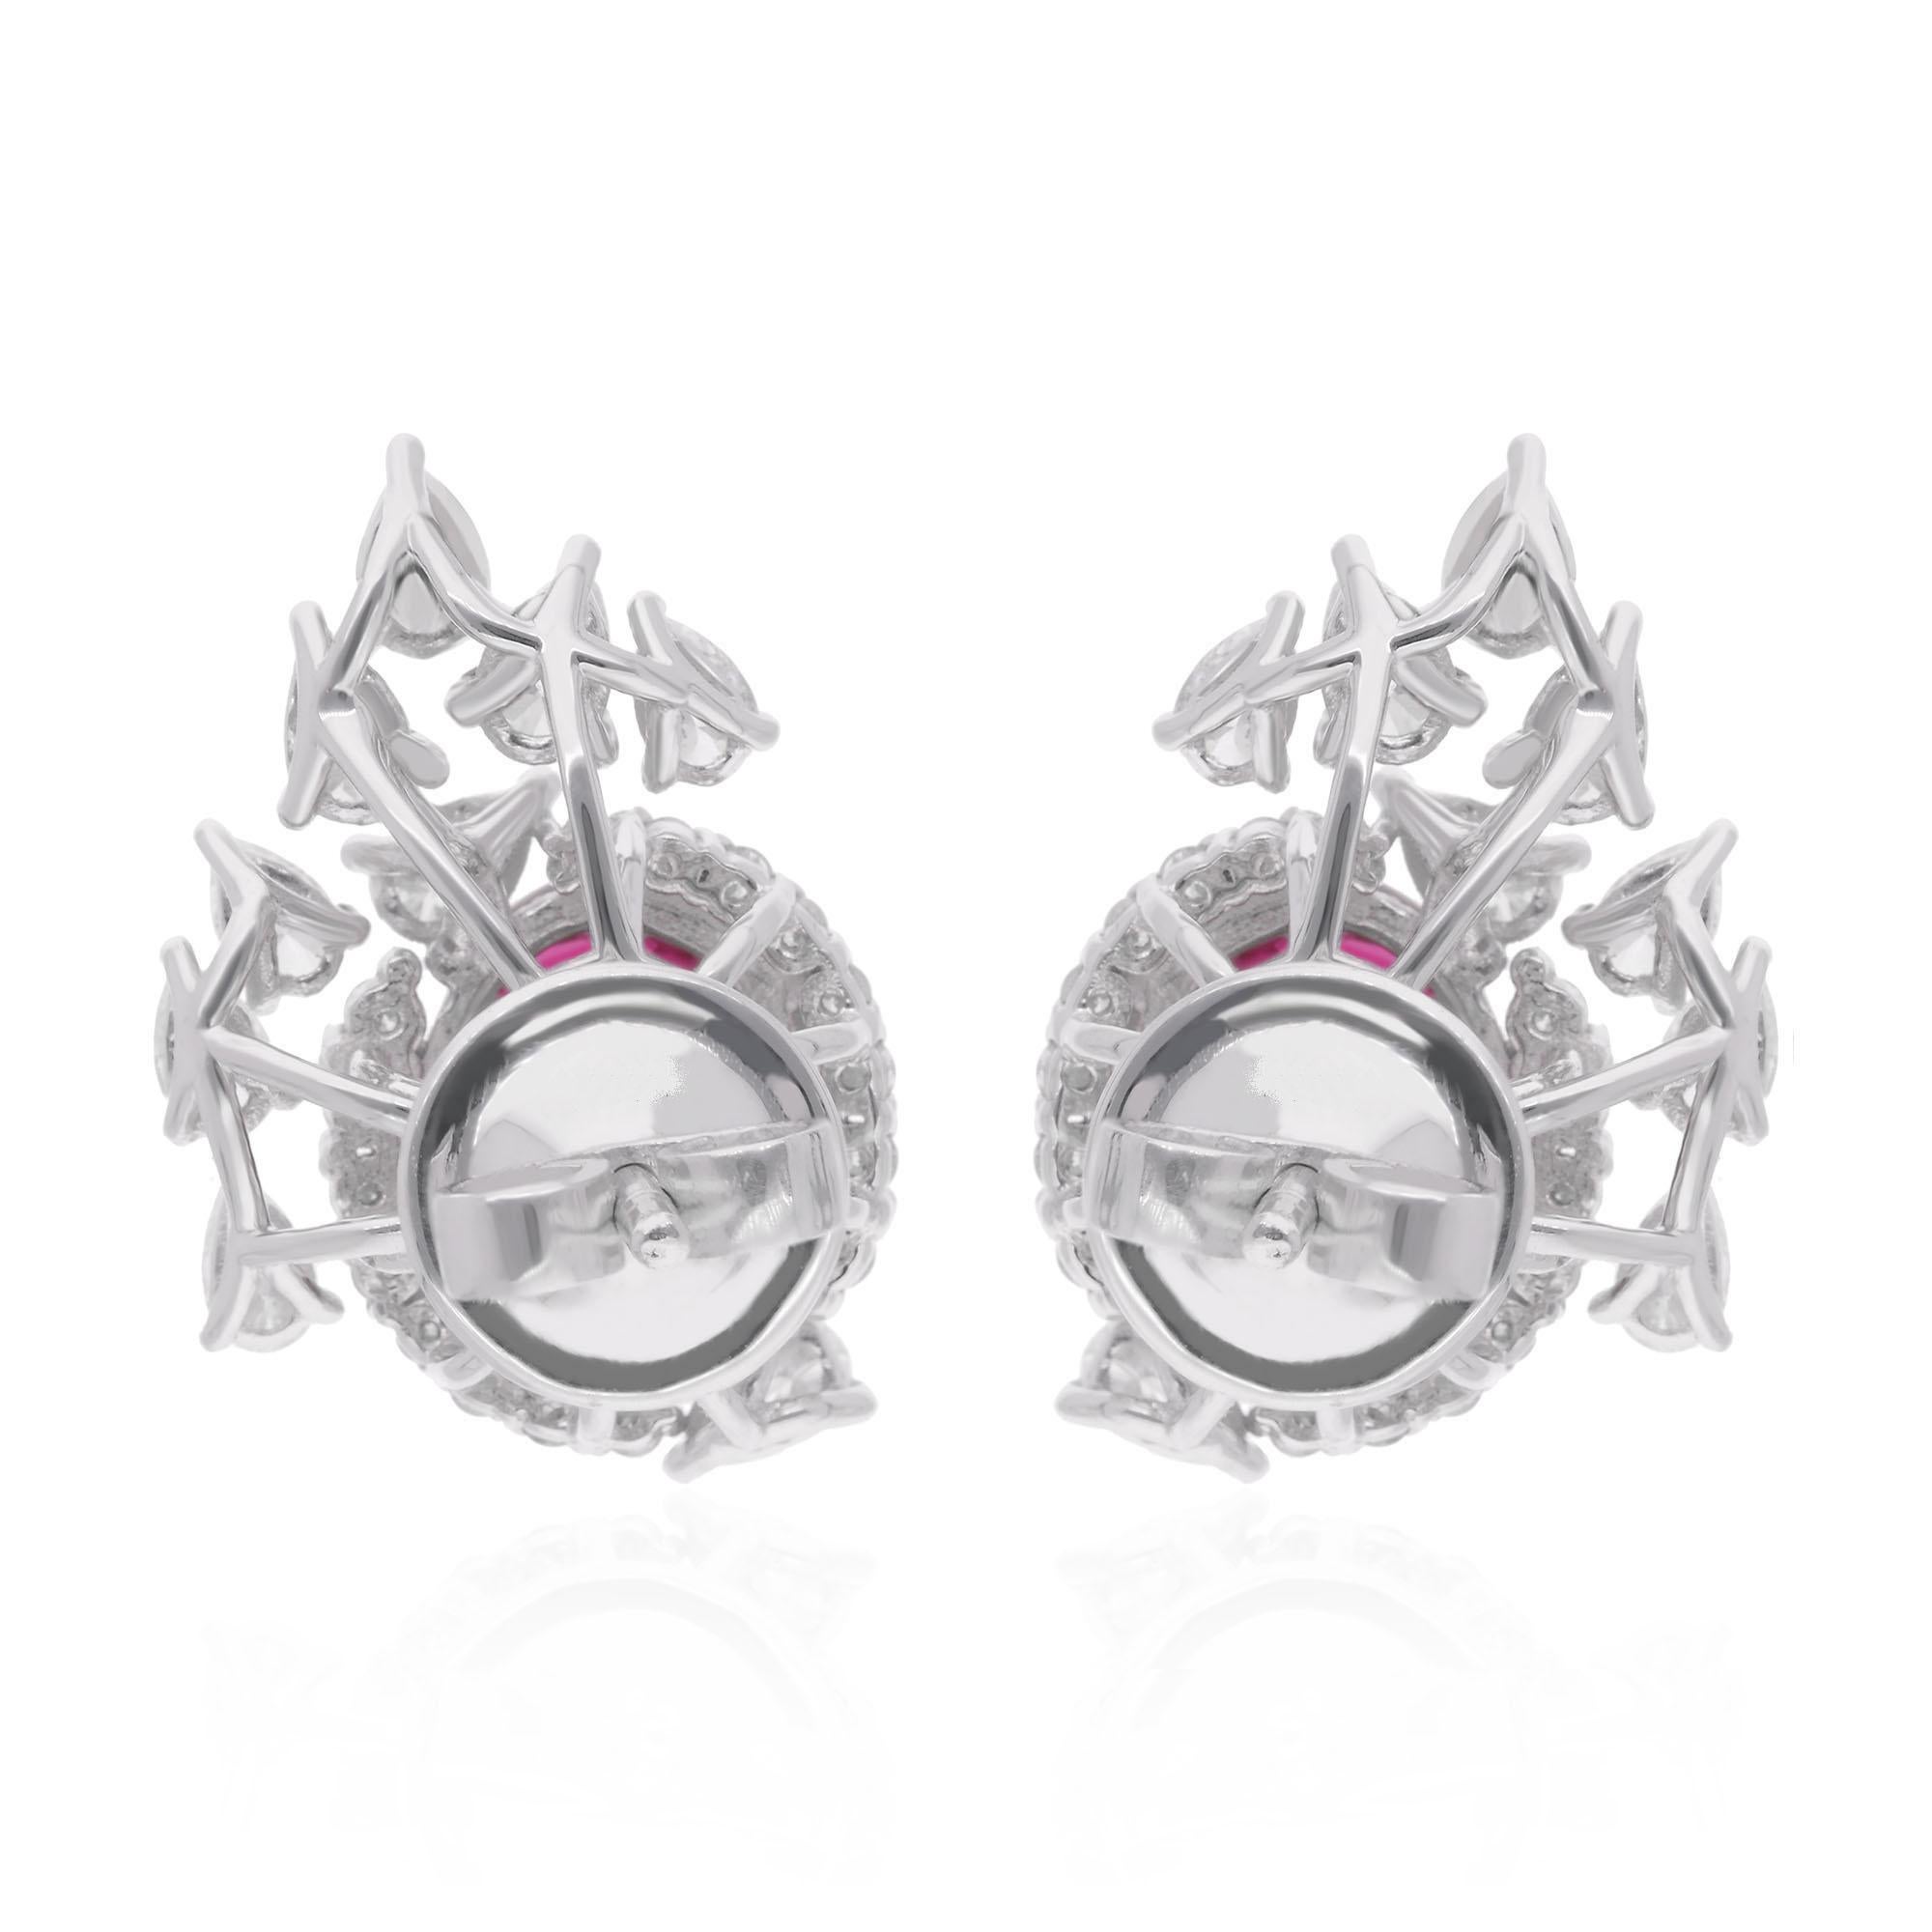 Women's Oval Ruby Gemstone Stud Earrings Diamond 14 Karat White Gold Handmade Jewelry For Sale